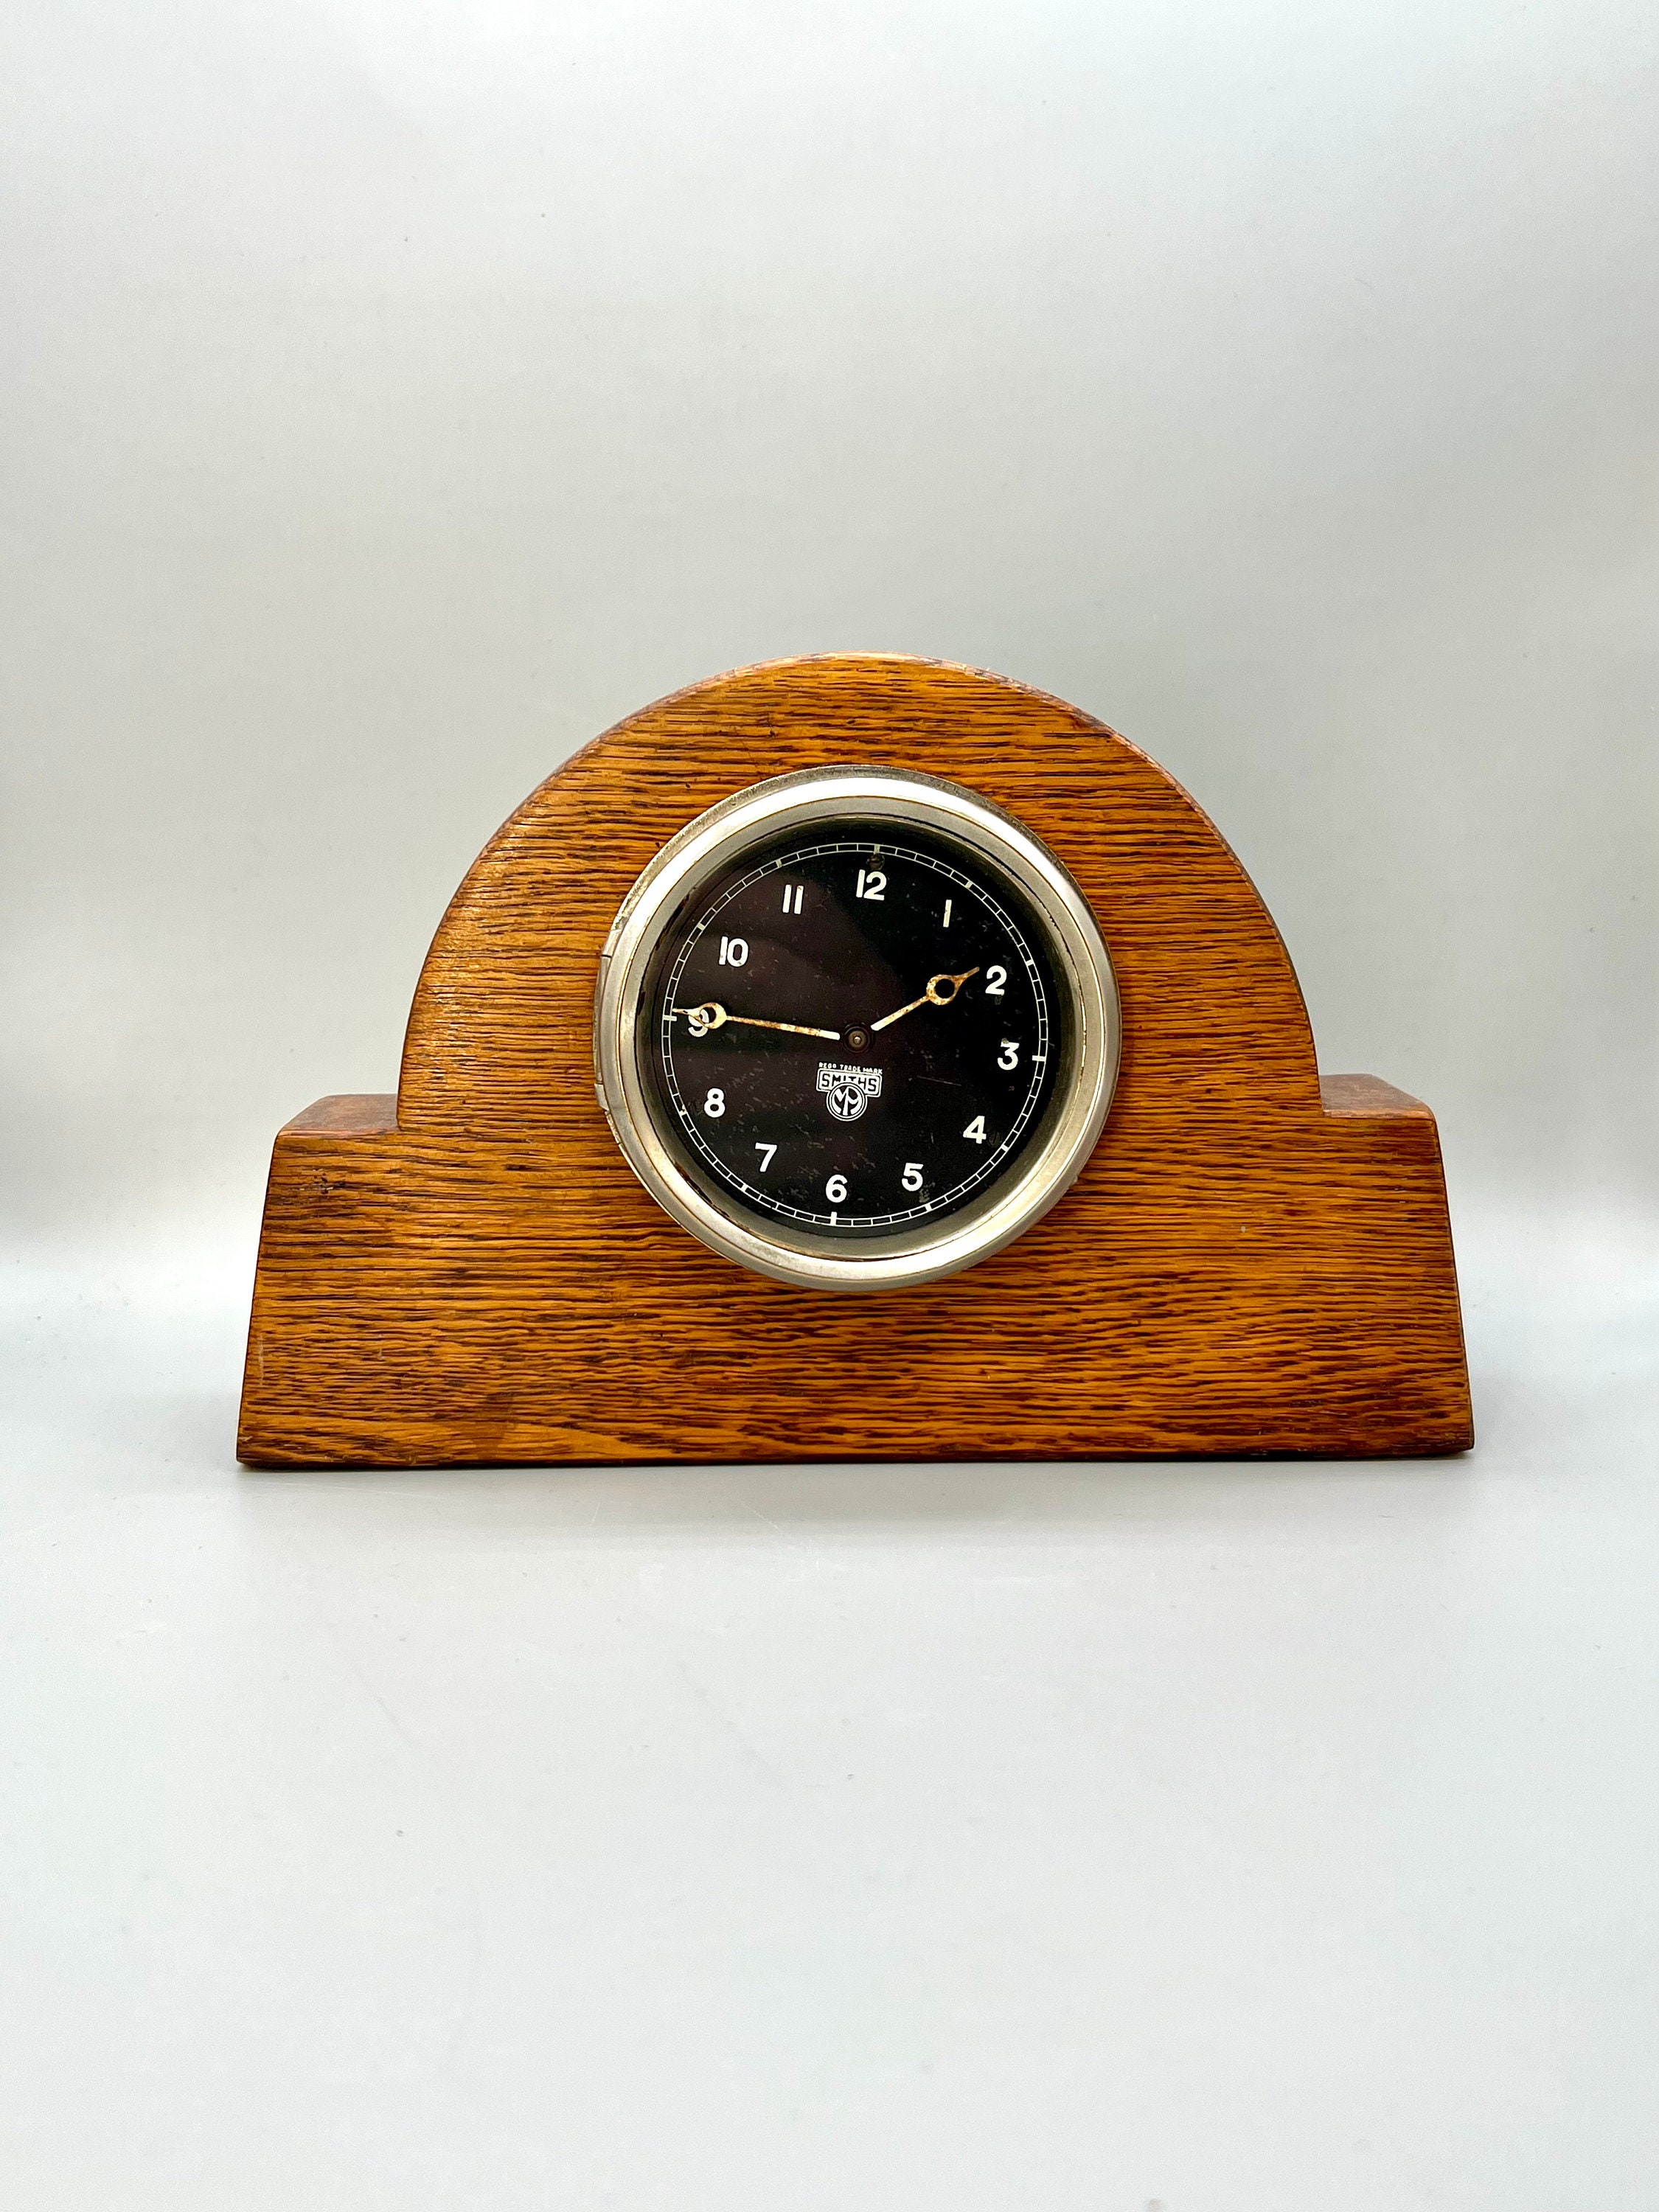 Horloge de tableau de bord de voiture Smiths vintage des années